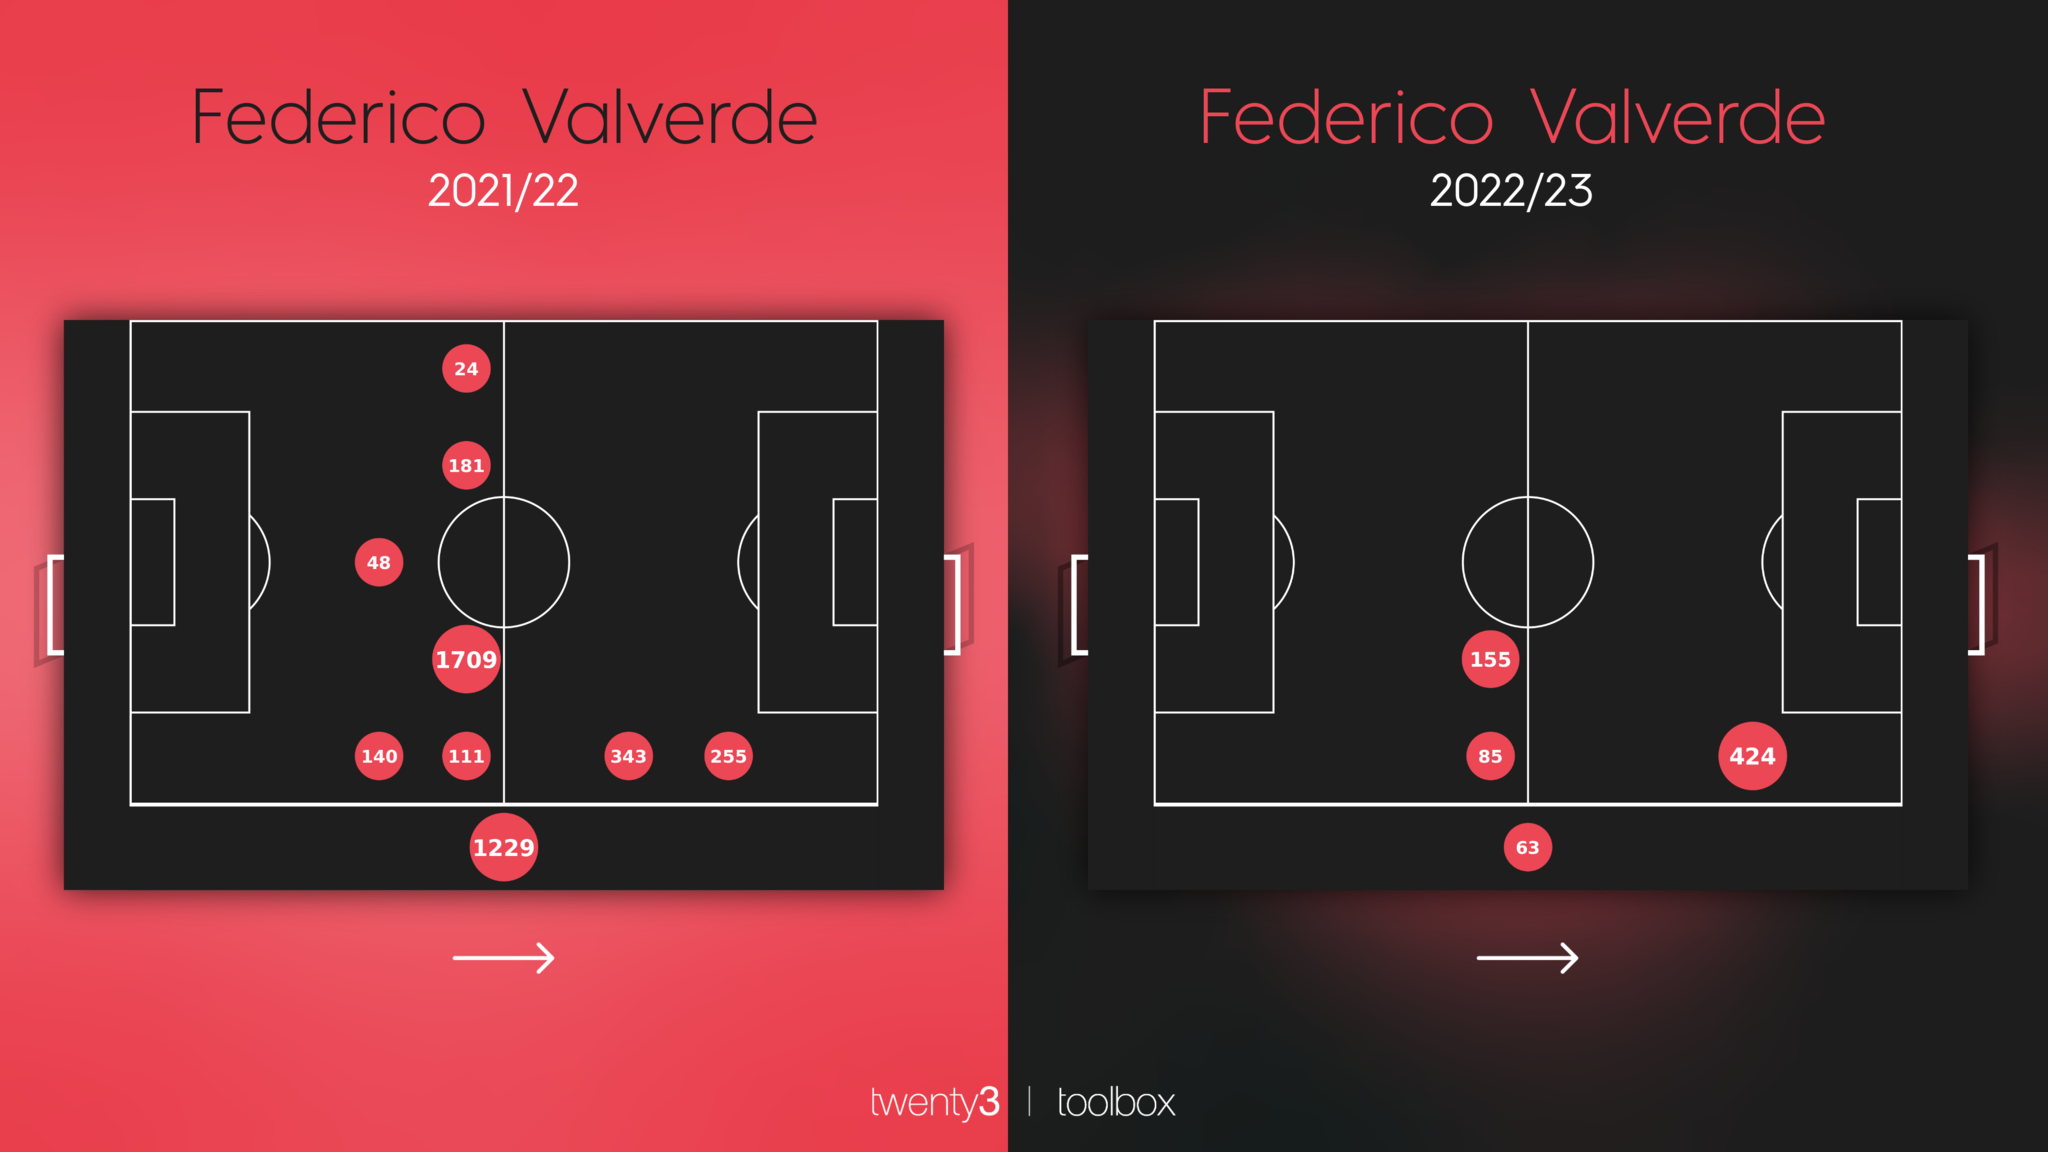 Distribución de minutos de Valverde en las temporadas 2021-22 y 2022-23